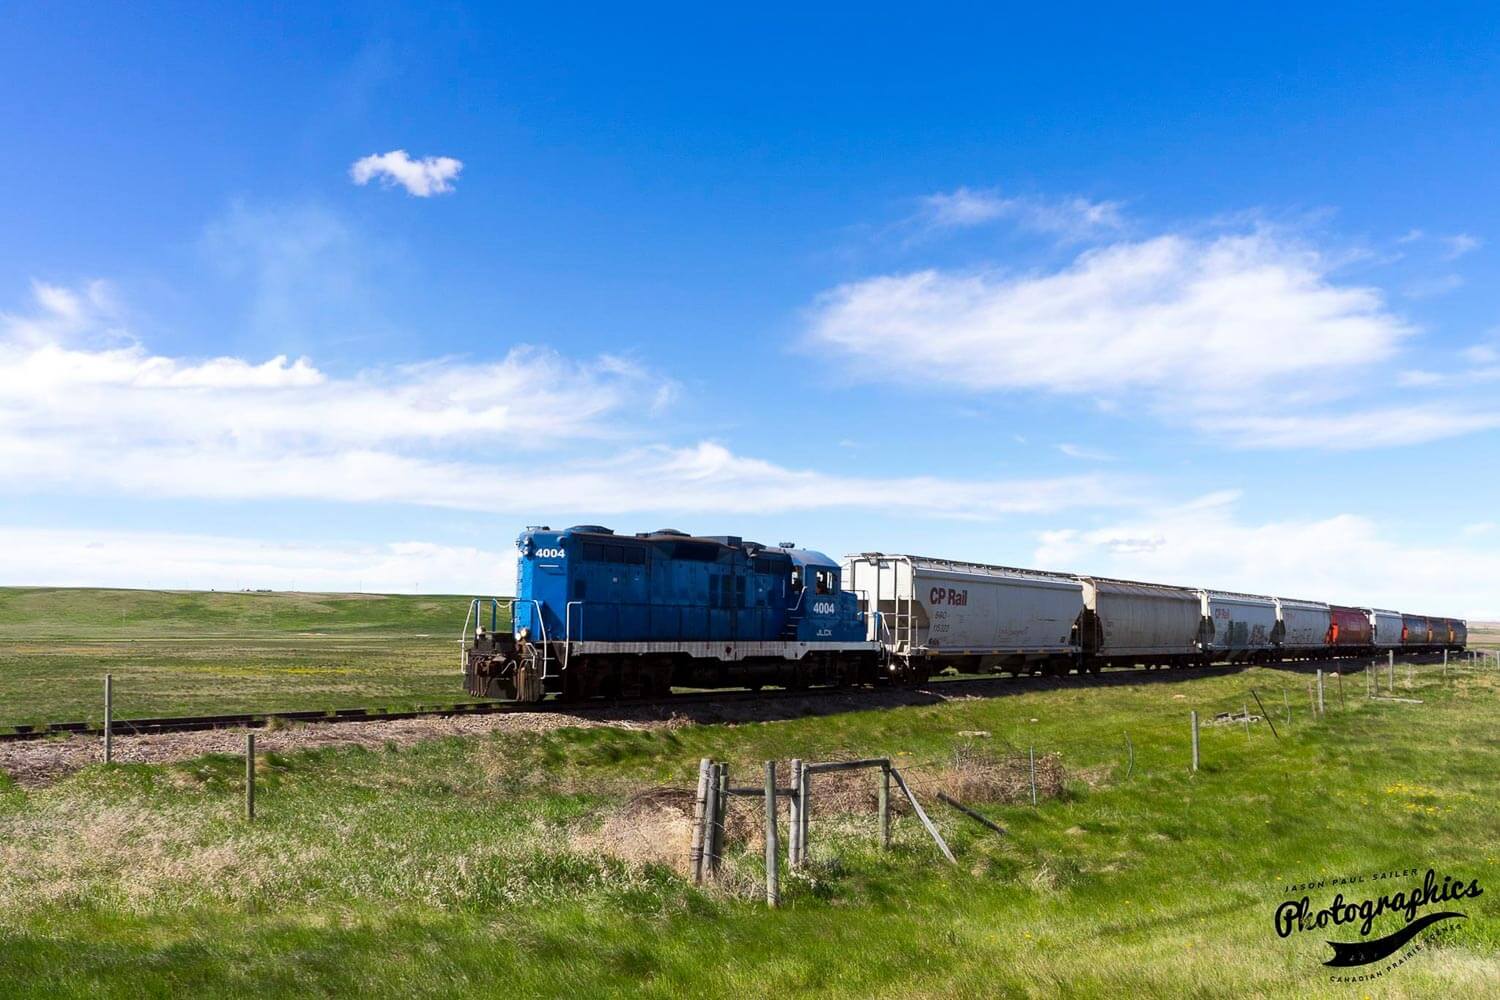 Blue train pushing railroad cars through a the prairies